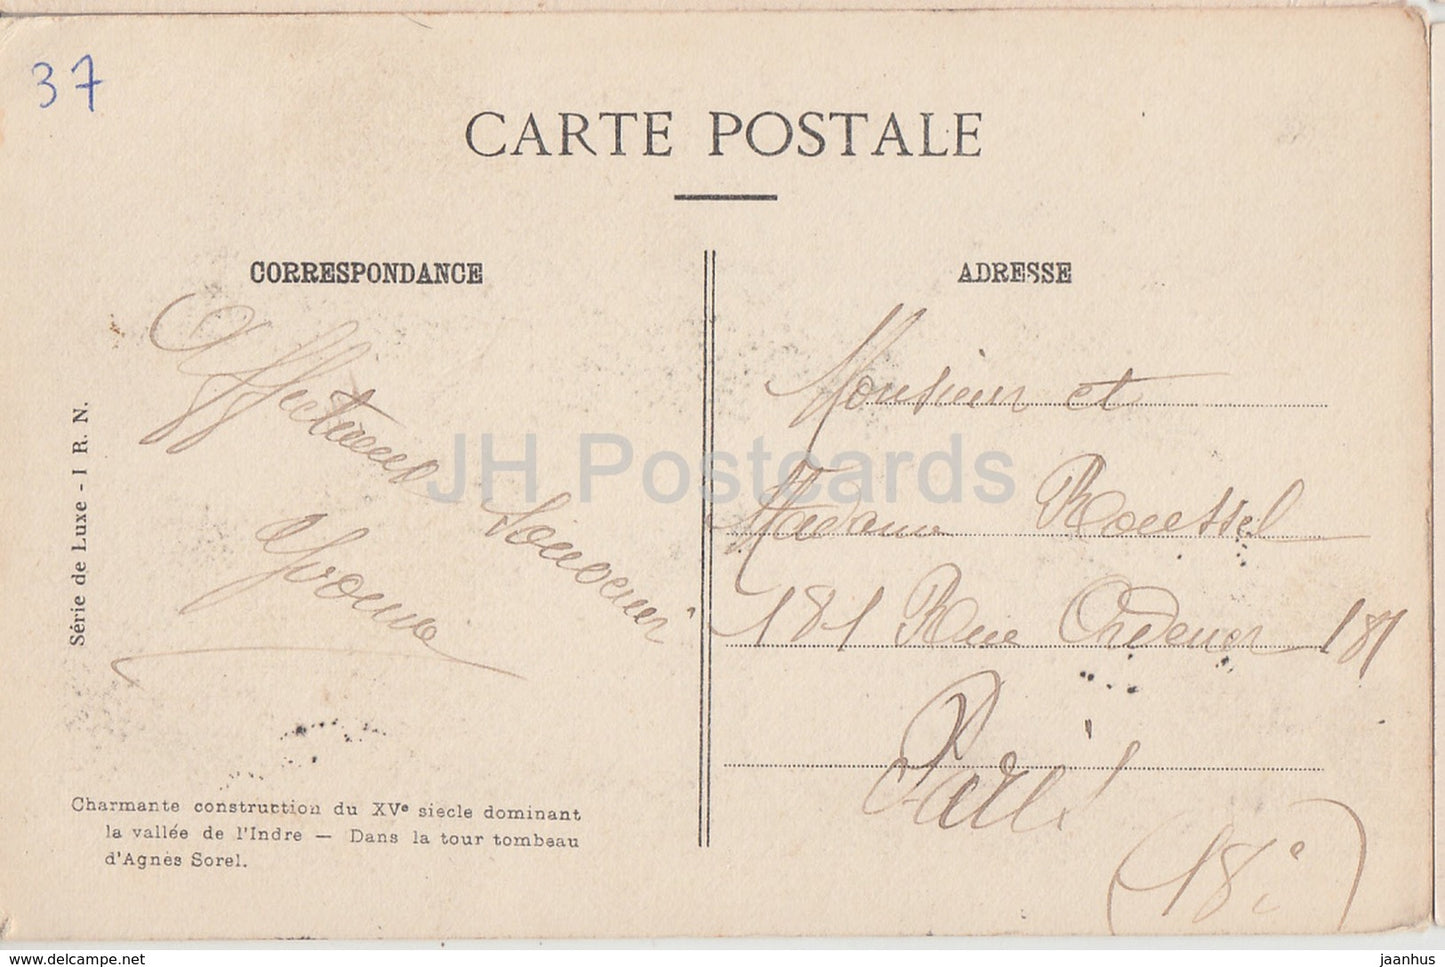 Loches - Le Chateau - Partie Sud du Logis du Roi - 28 - château - carte postale ancienne - 1919 - France - occasion